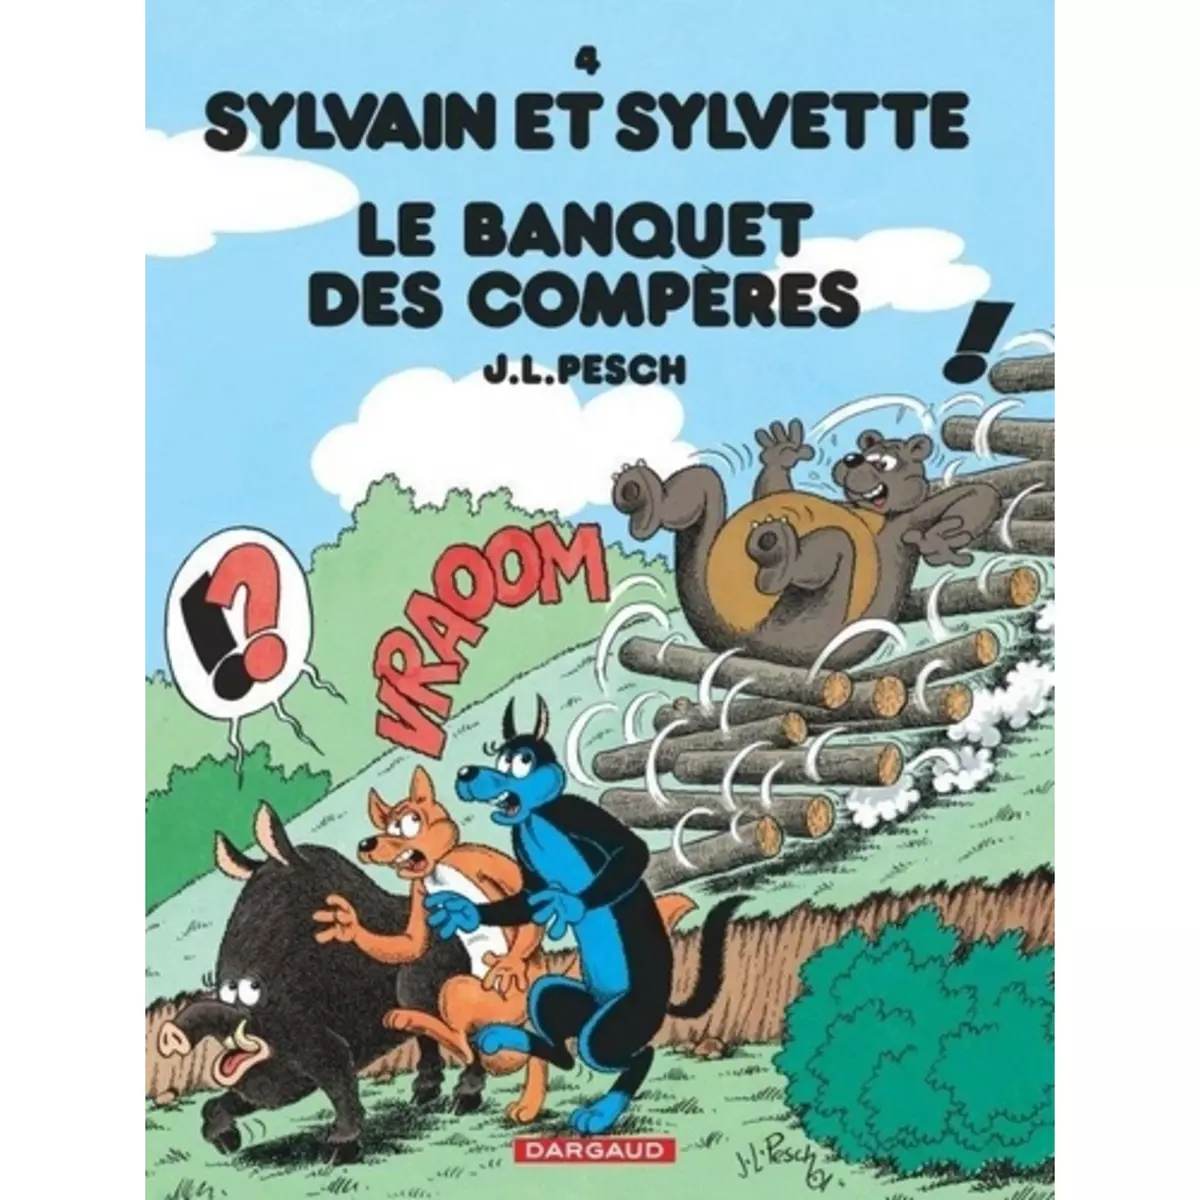  SYLVAIN ET SYLVETTE TOME 4 : LE BANQUET DES COMPERES, Pesch Jean-Louis